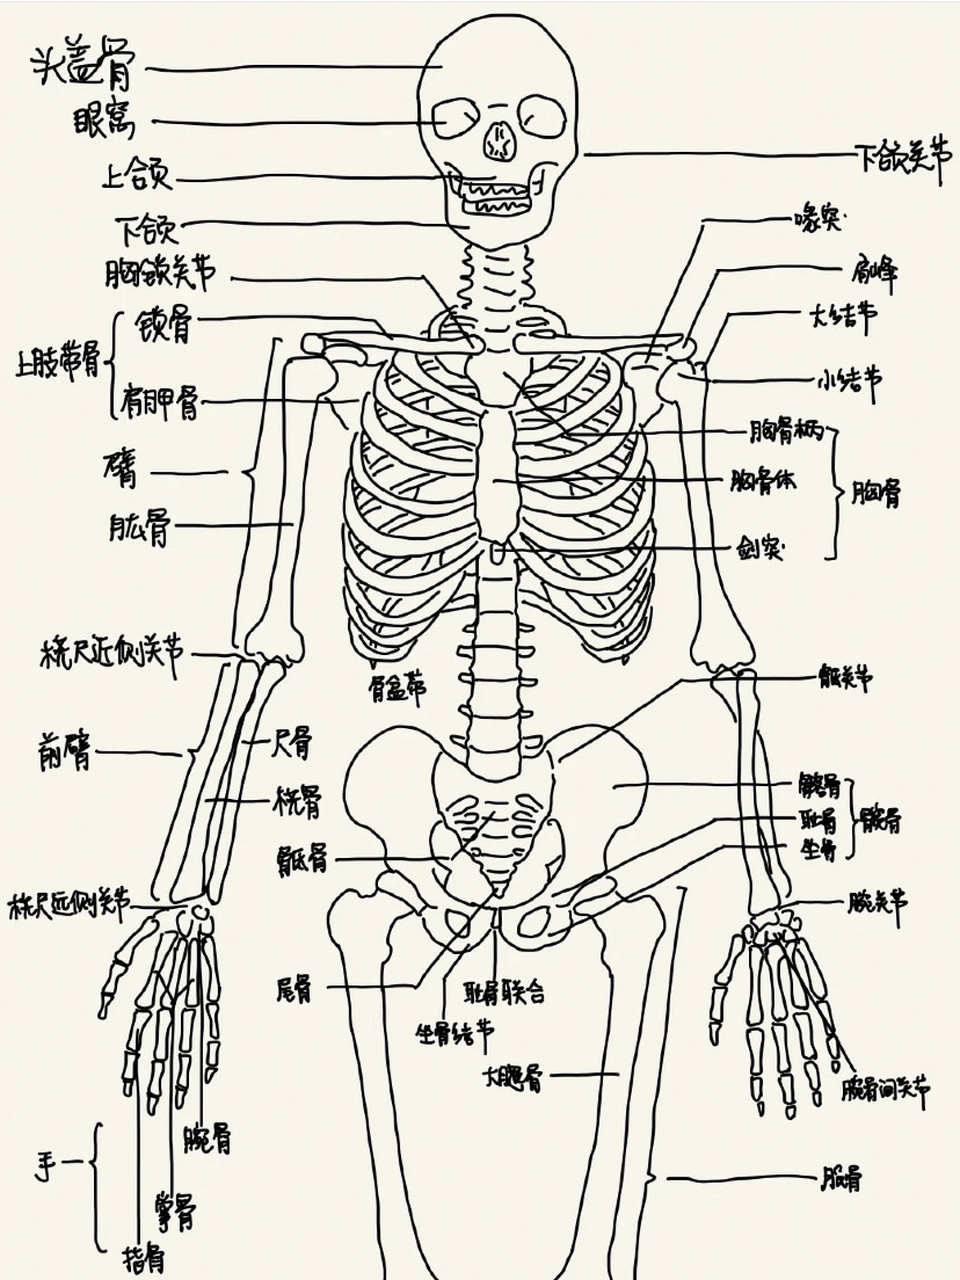 人体结构示意图整体图片